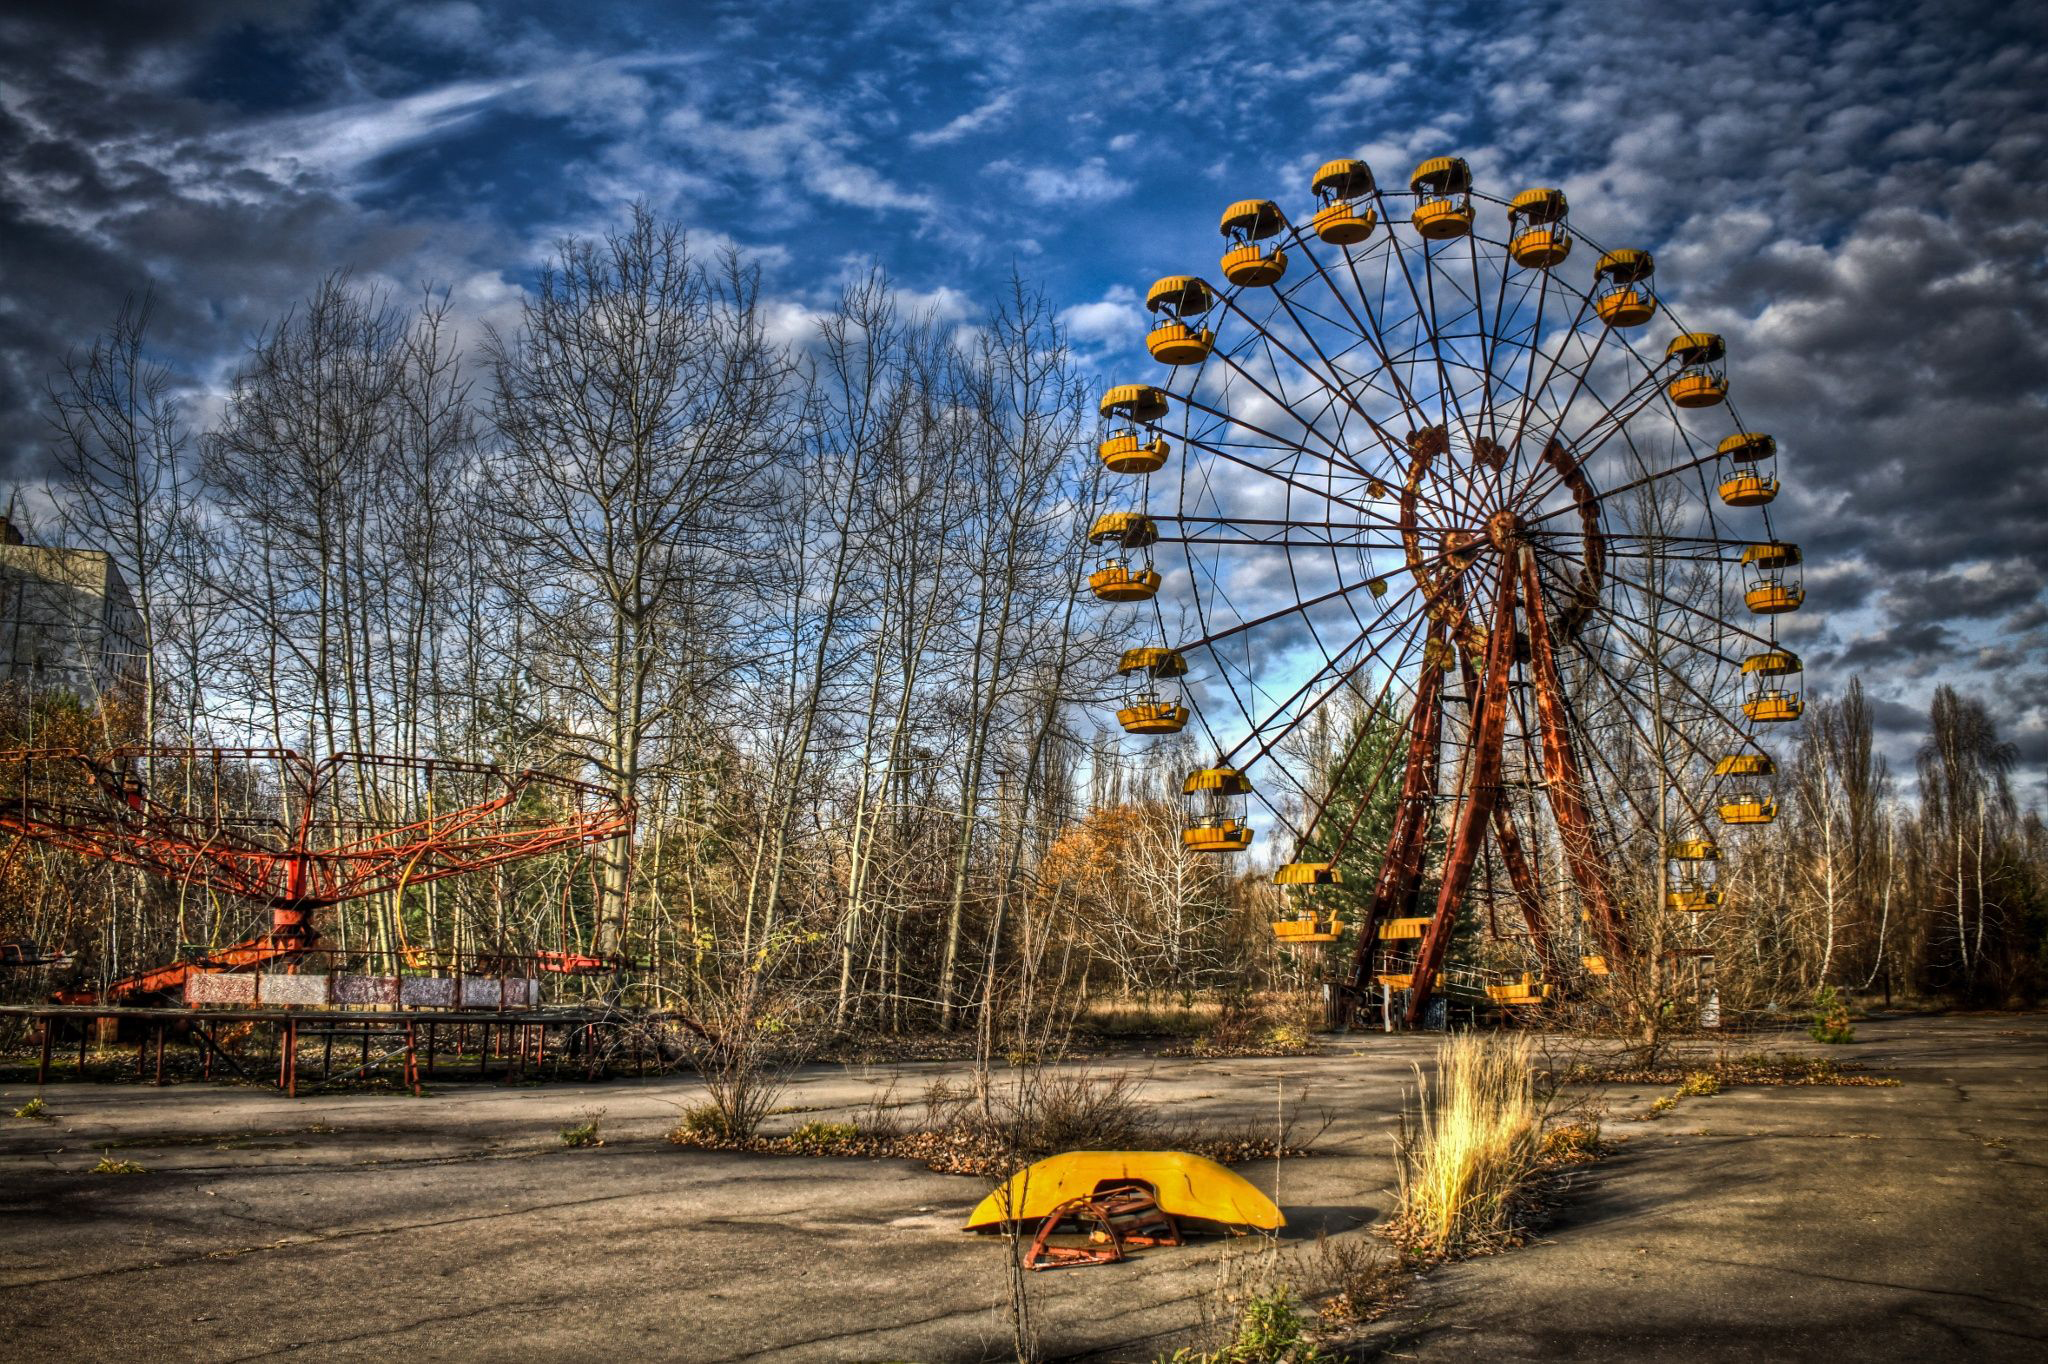 Chernobyl Dizi Konusu, Oyuncuları ve Tanıtımı